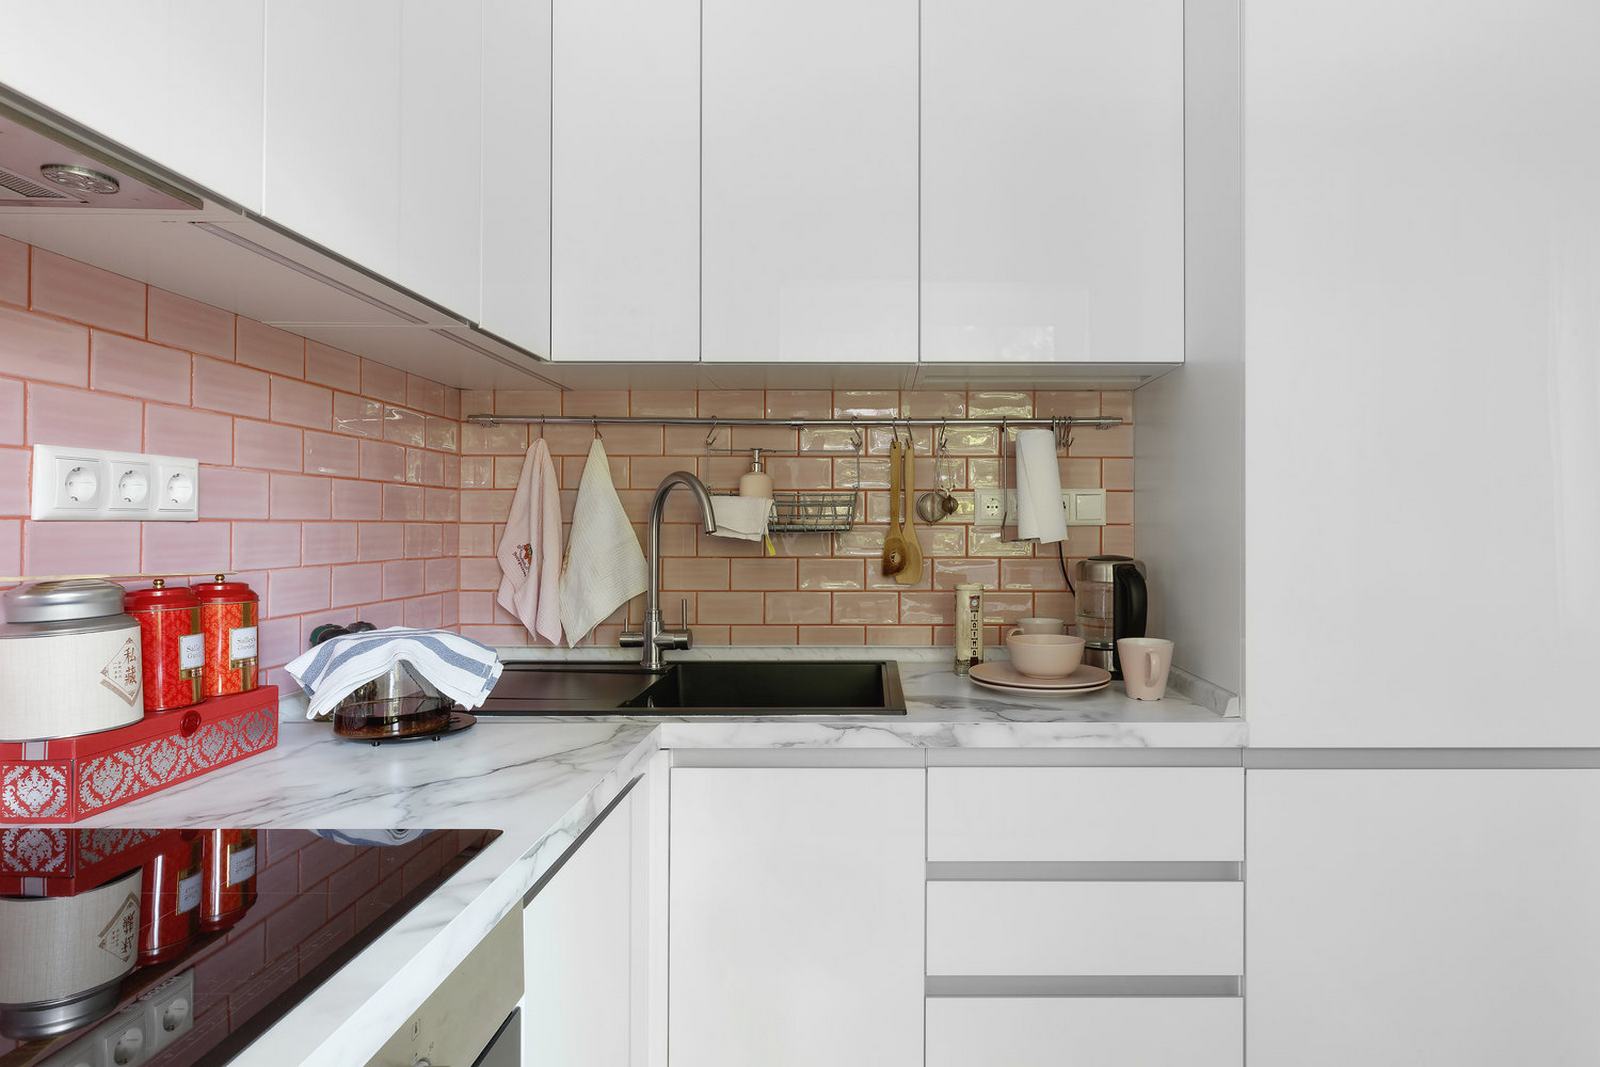 Tuy diện tích không rộng rãi như căn bếp vẫn đáp ứng đầy đủ tiện nghi cần thiết. Khu vực backsplash ốp gạch màu hồng với lớp hoàn thiện sáng bóng và đẹp đẽ.